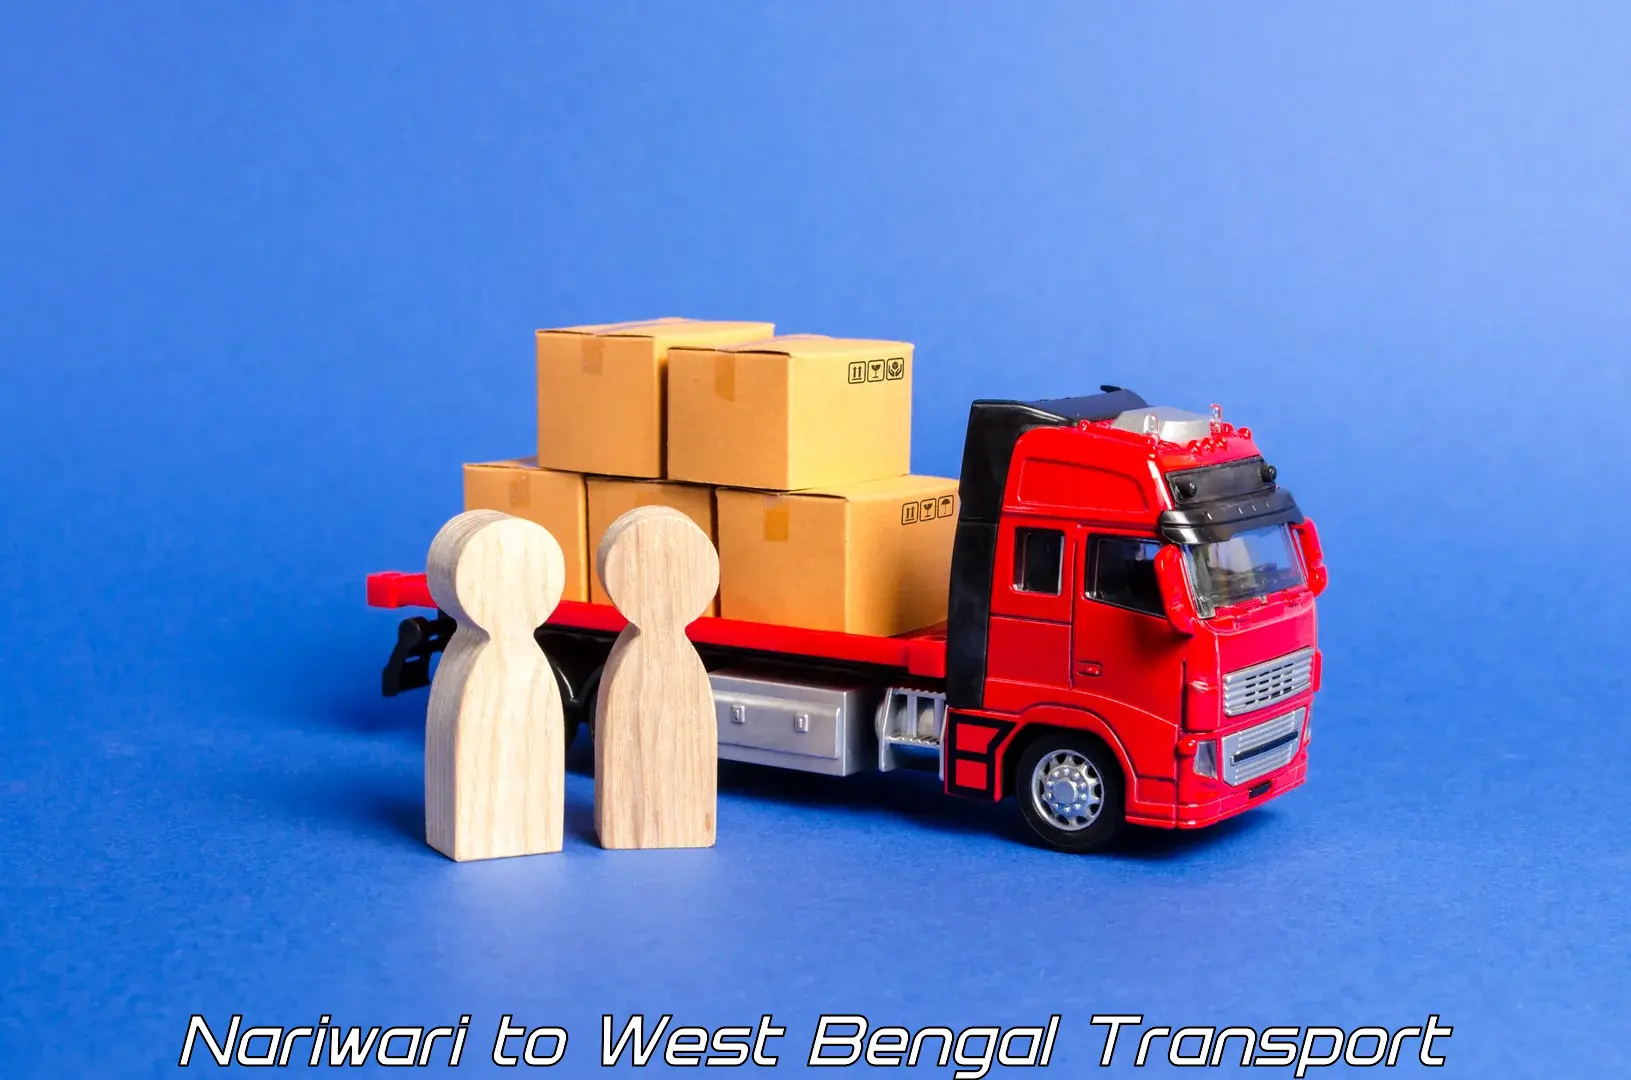 Land transport services Nariwari to Habra